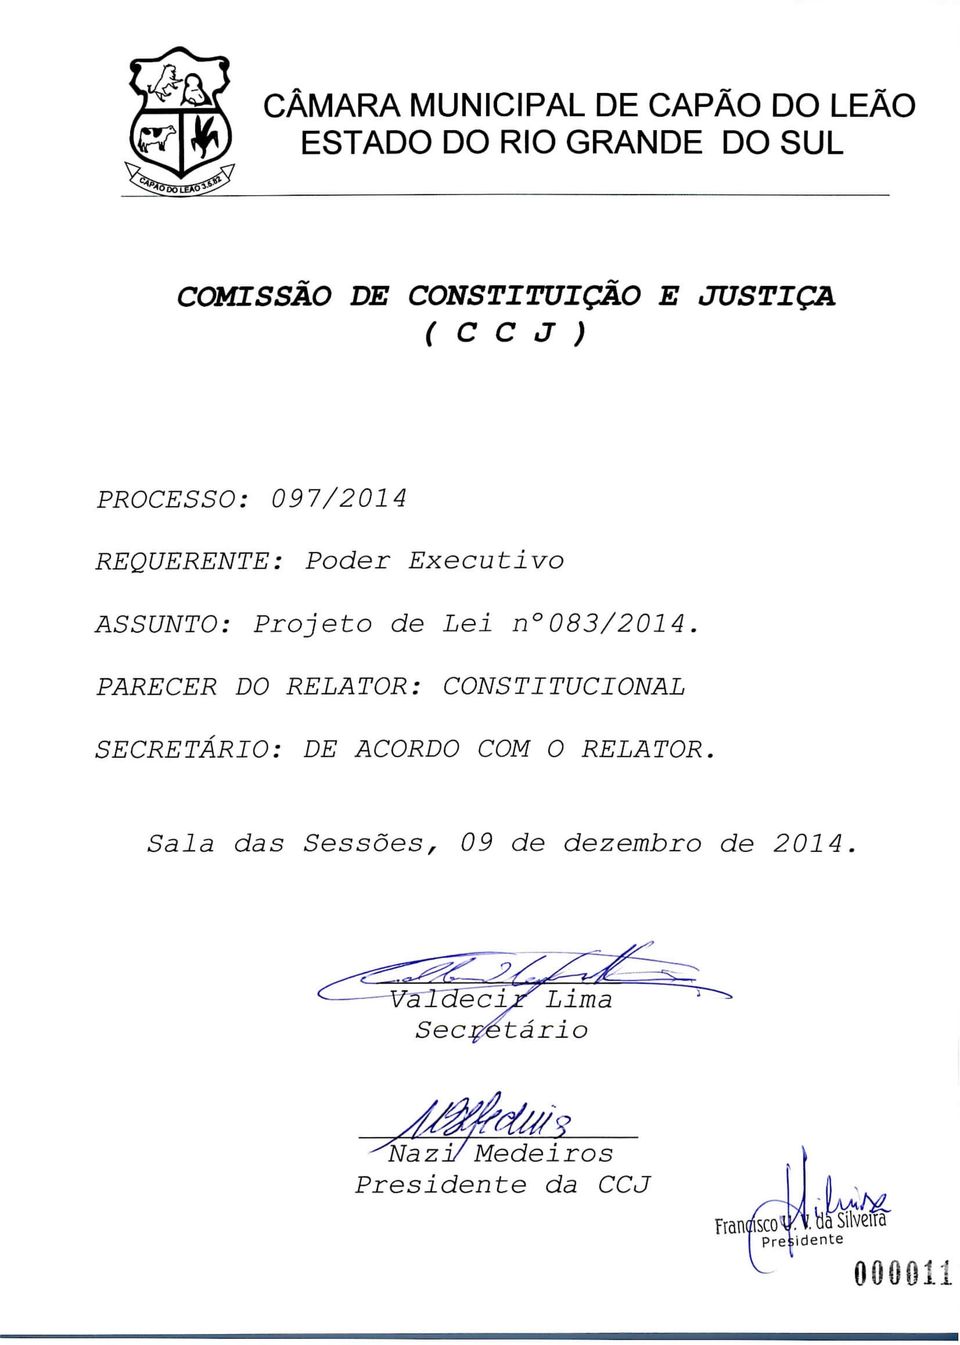 083/2014 PARECER DO RELATOR: CONSTITUCIONAL SECRETARIO: DE ACORDO COM O RELATOR Sala das